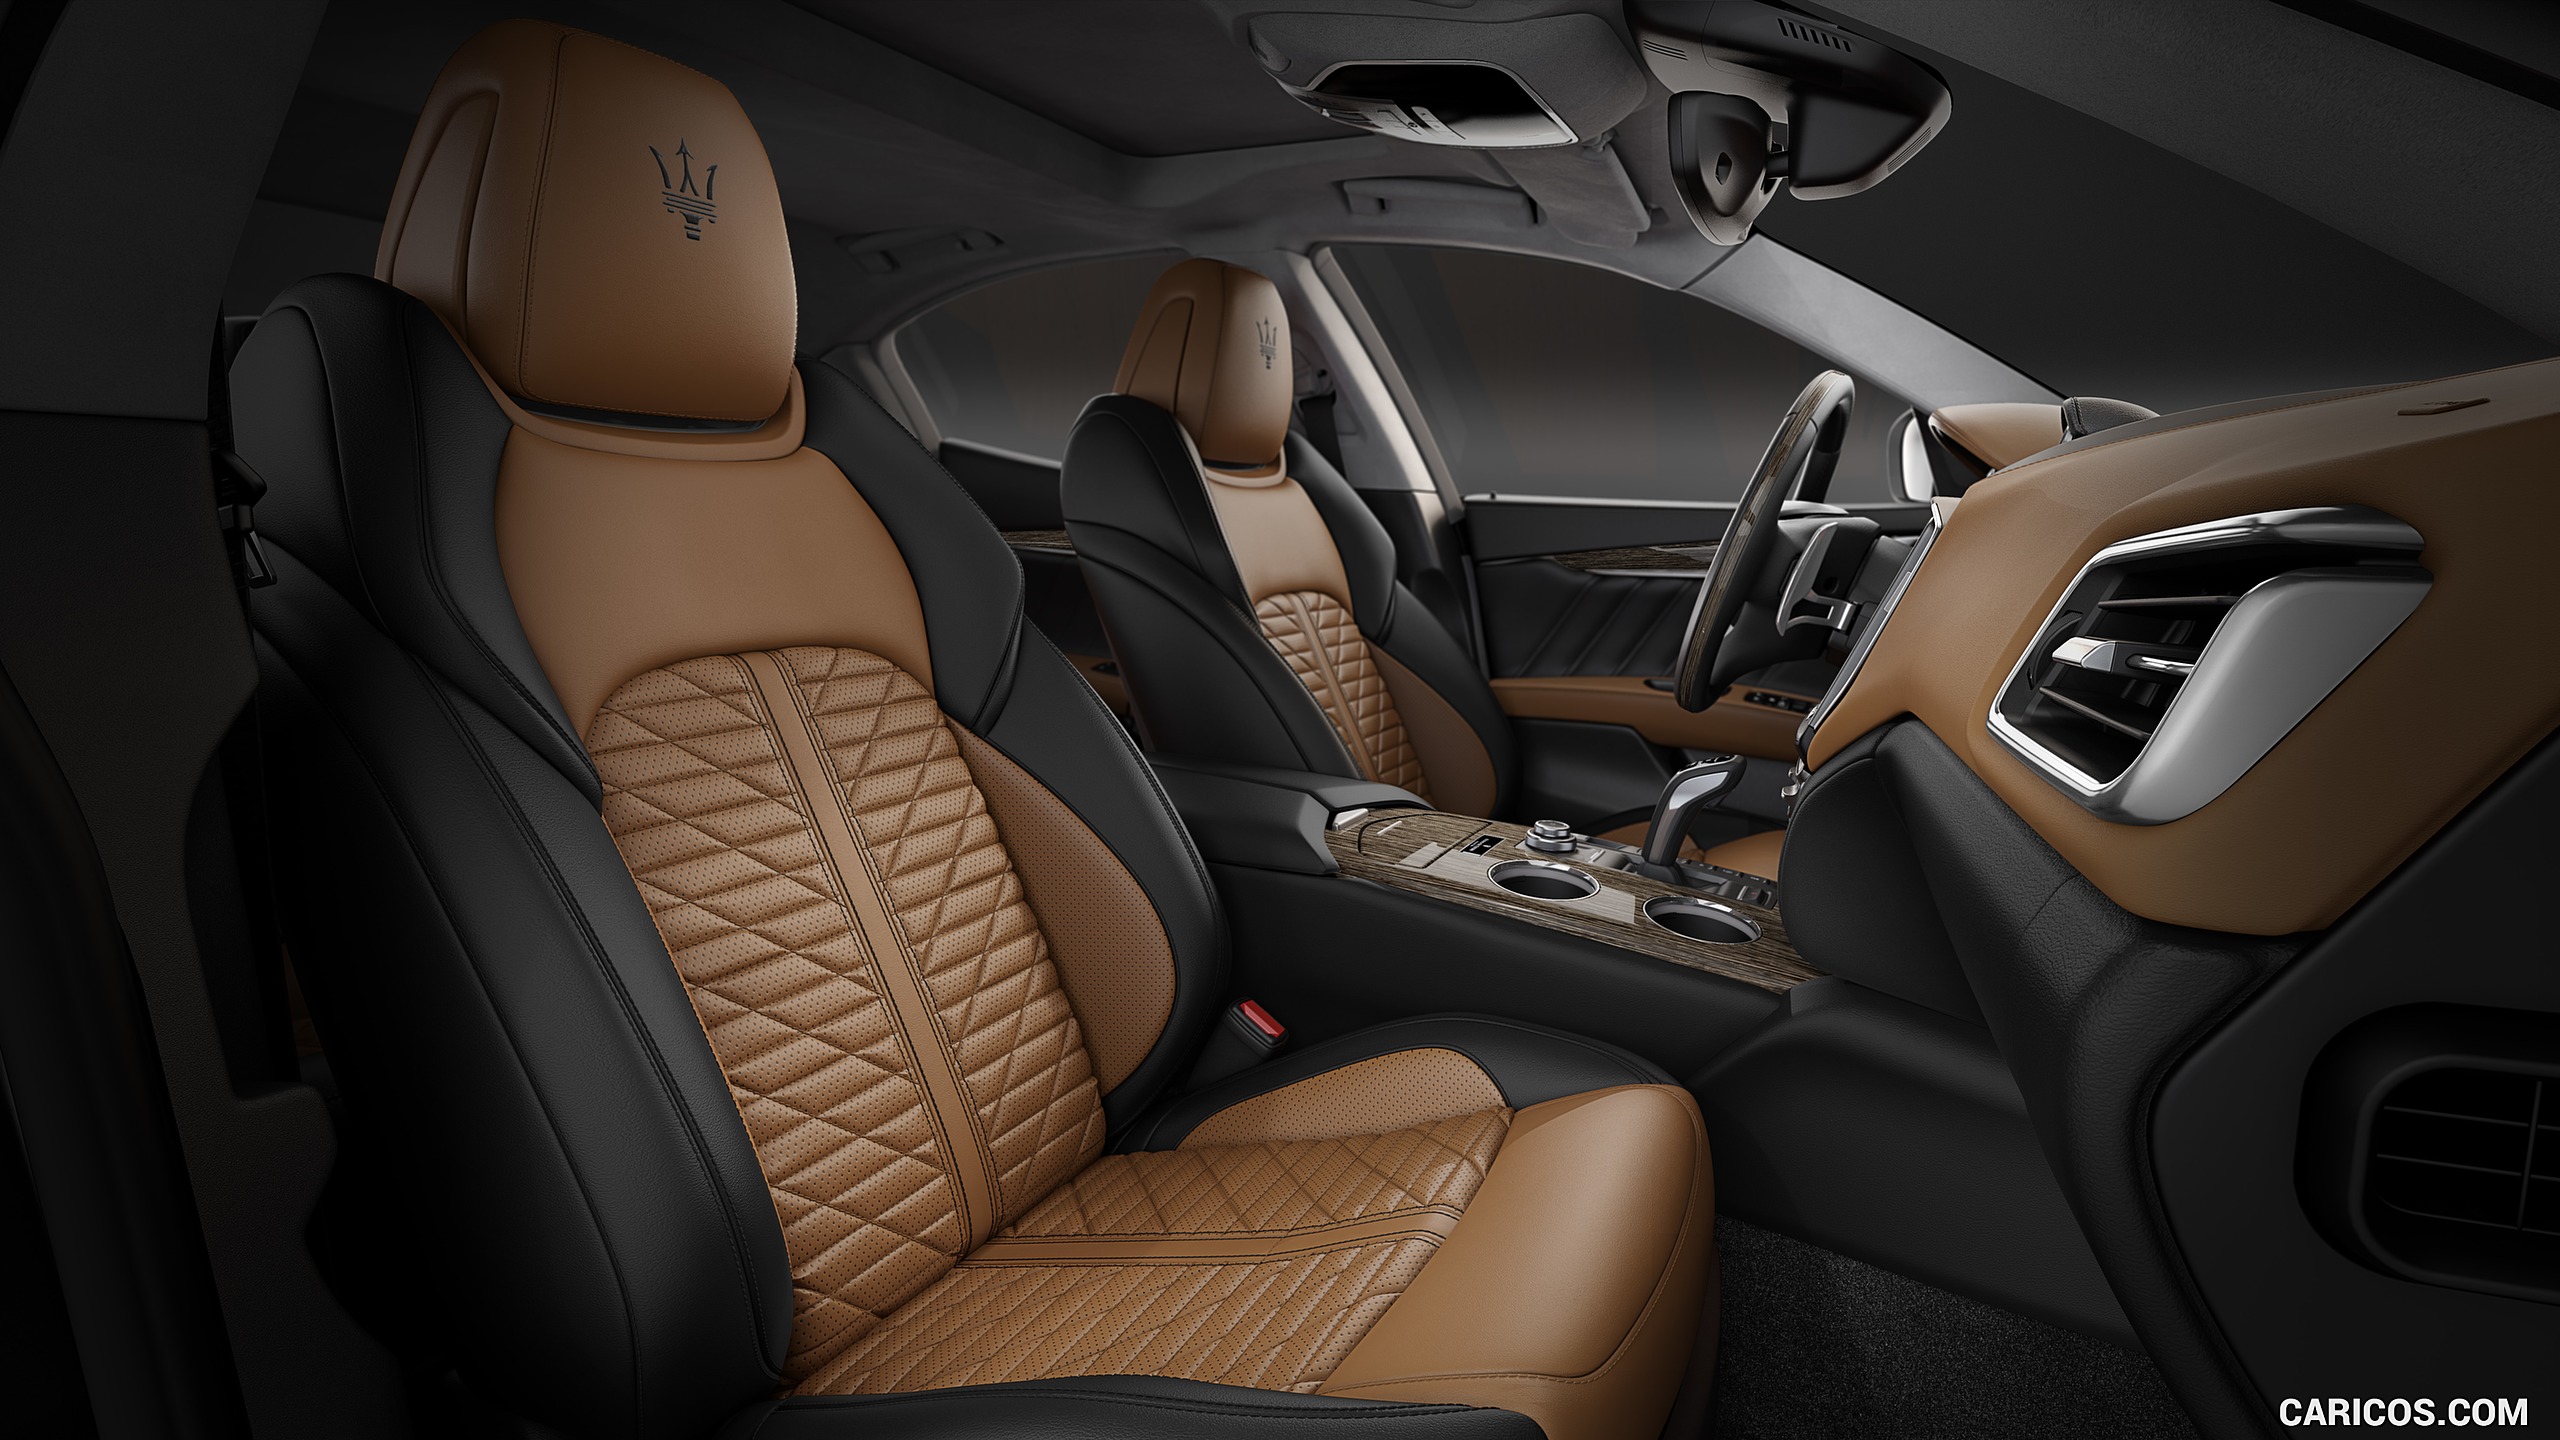 2019 Maserati Ghibli Edizione Nobile - Interior, Front Seats, #12 of 12